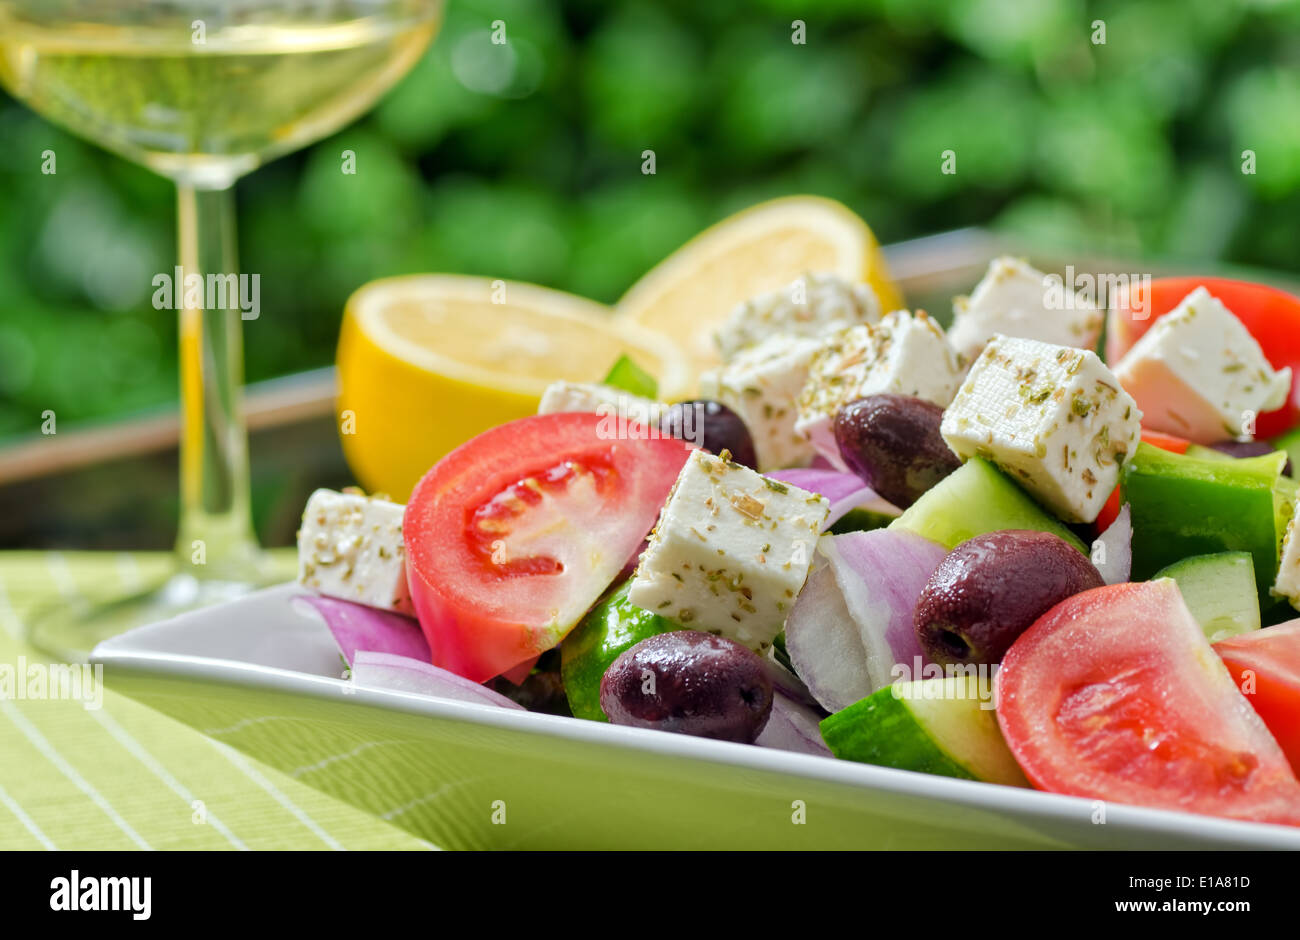 Fraîcheur d'une salade grecque avec de la tomate, concombre, poivron vert, oignon rouge, olives kalamata, et le fromage feta. Banque D'Images